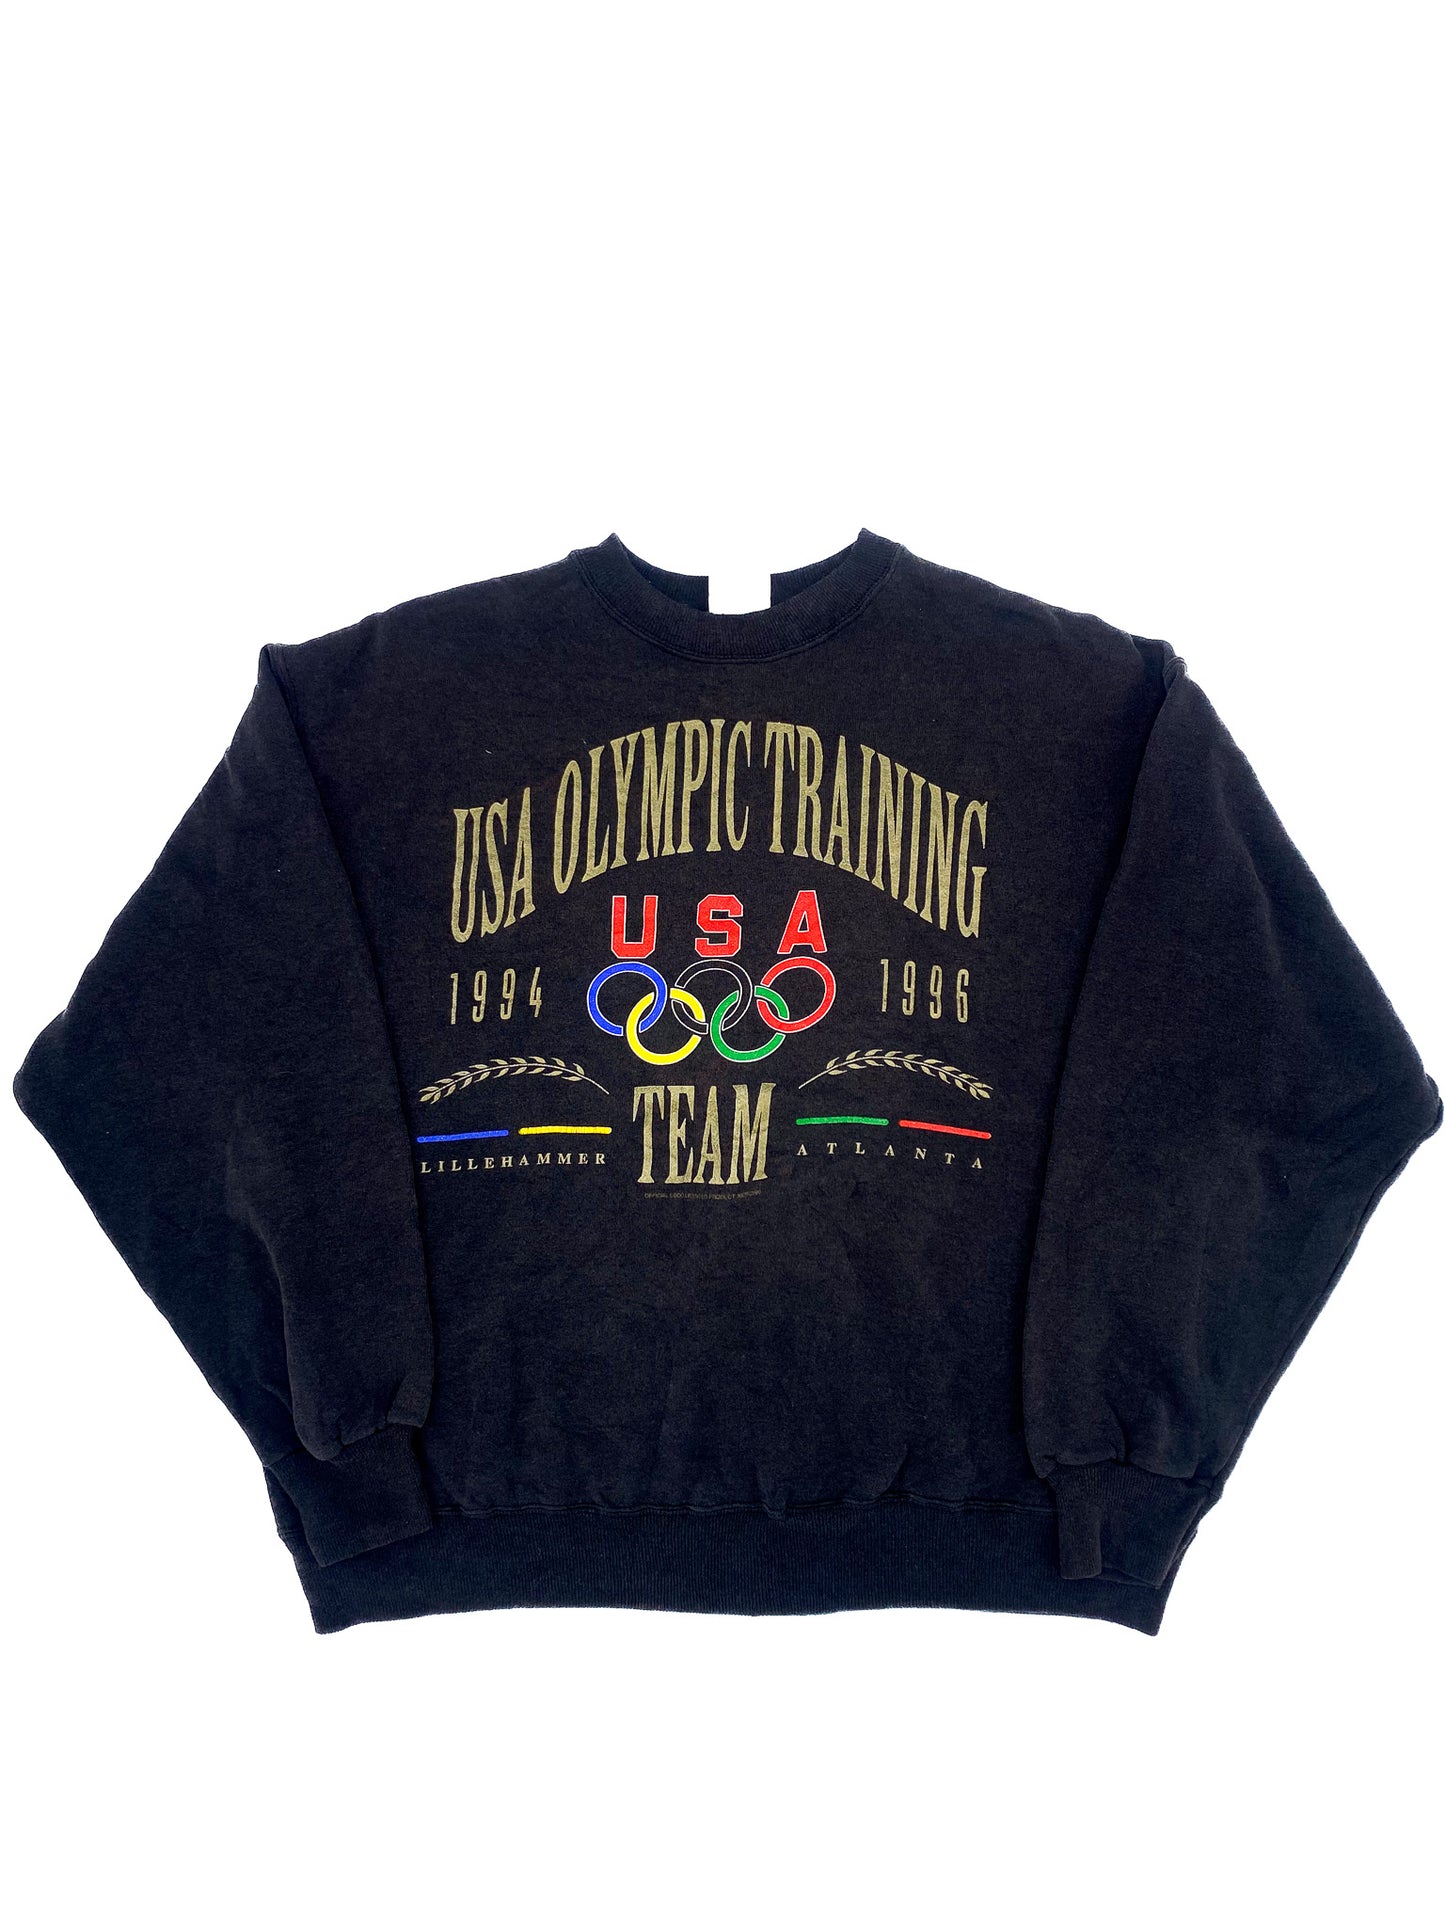 Vintage 1996 Atlanta Olympics Jumper XL